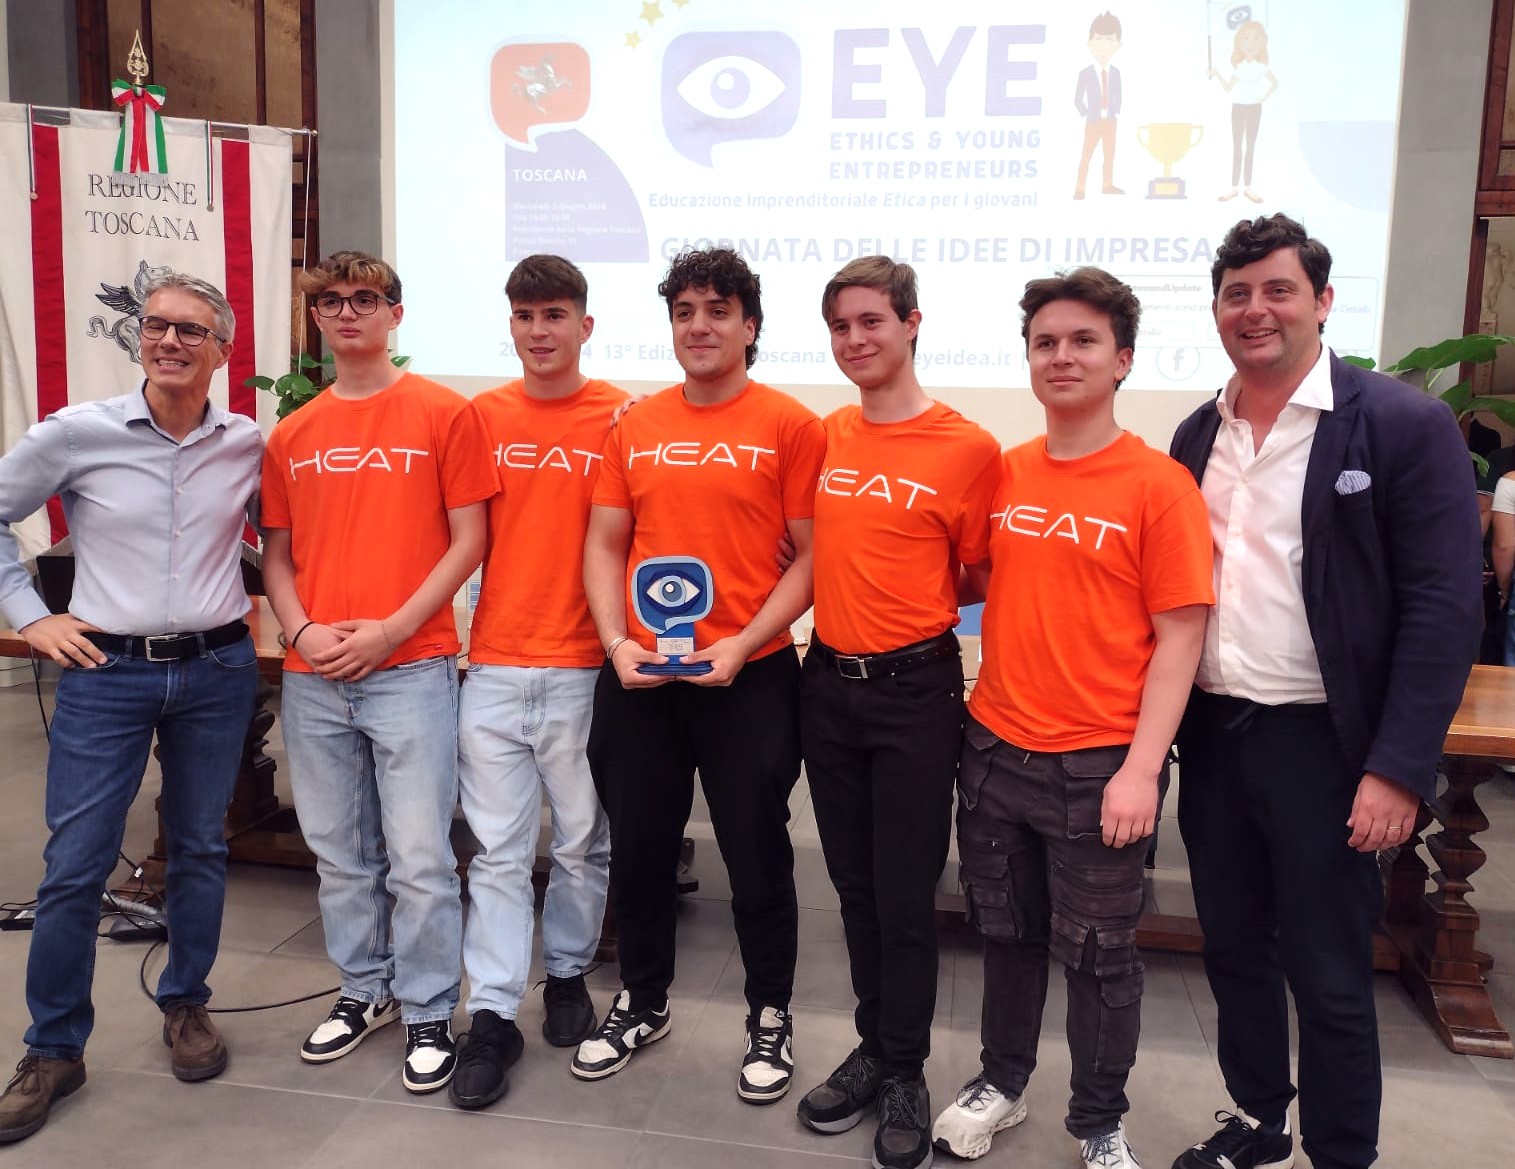 Trofeo Eye Toscana per giovani studenti: vince Heat, appendiabiti ri...